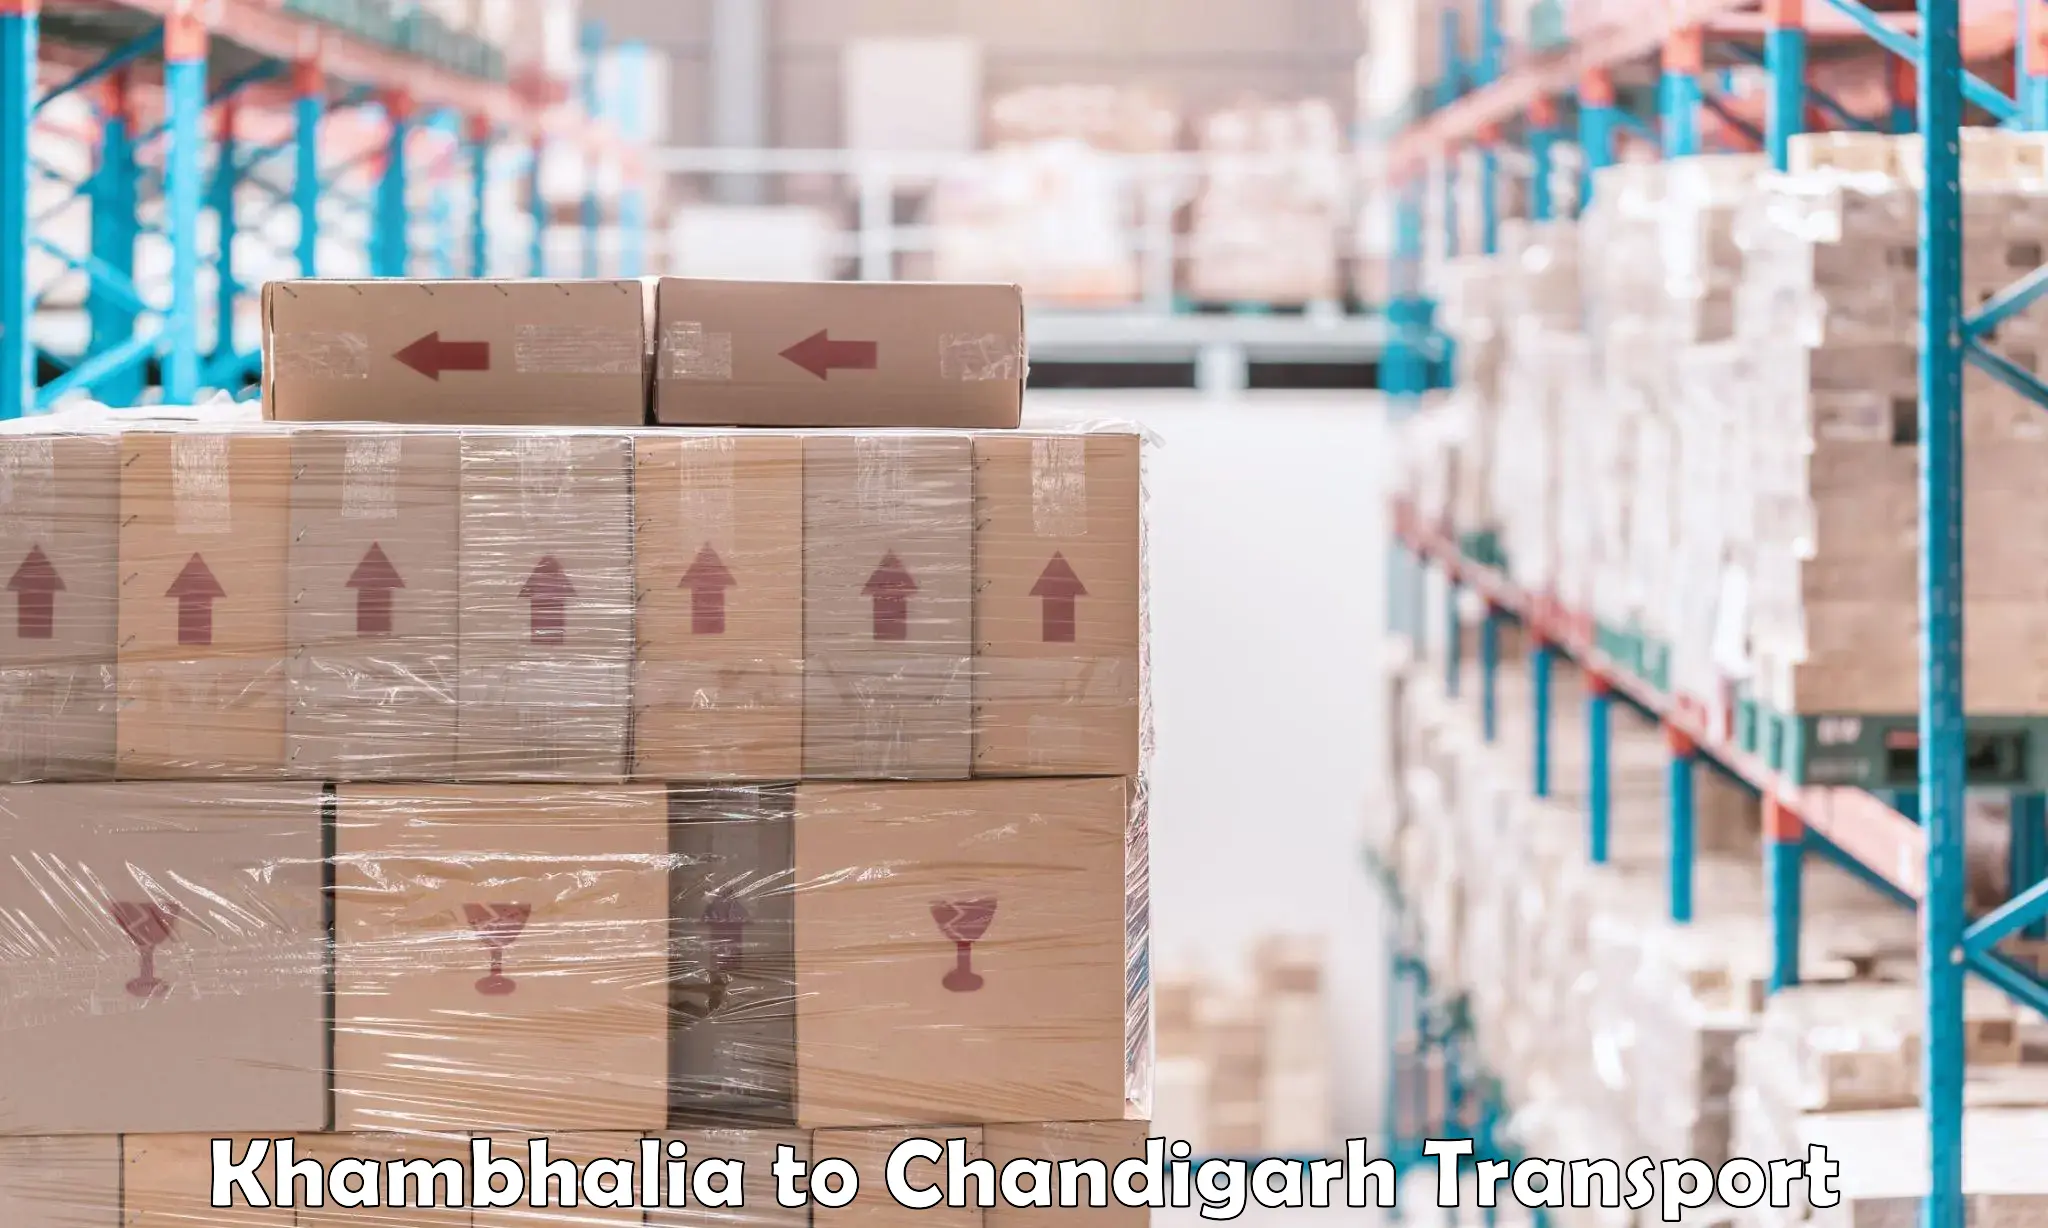 Truck transport companies in India Khambhalia to Chandigarh